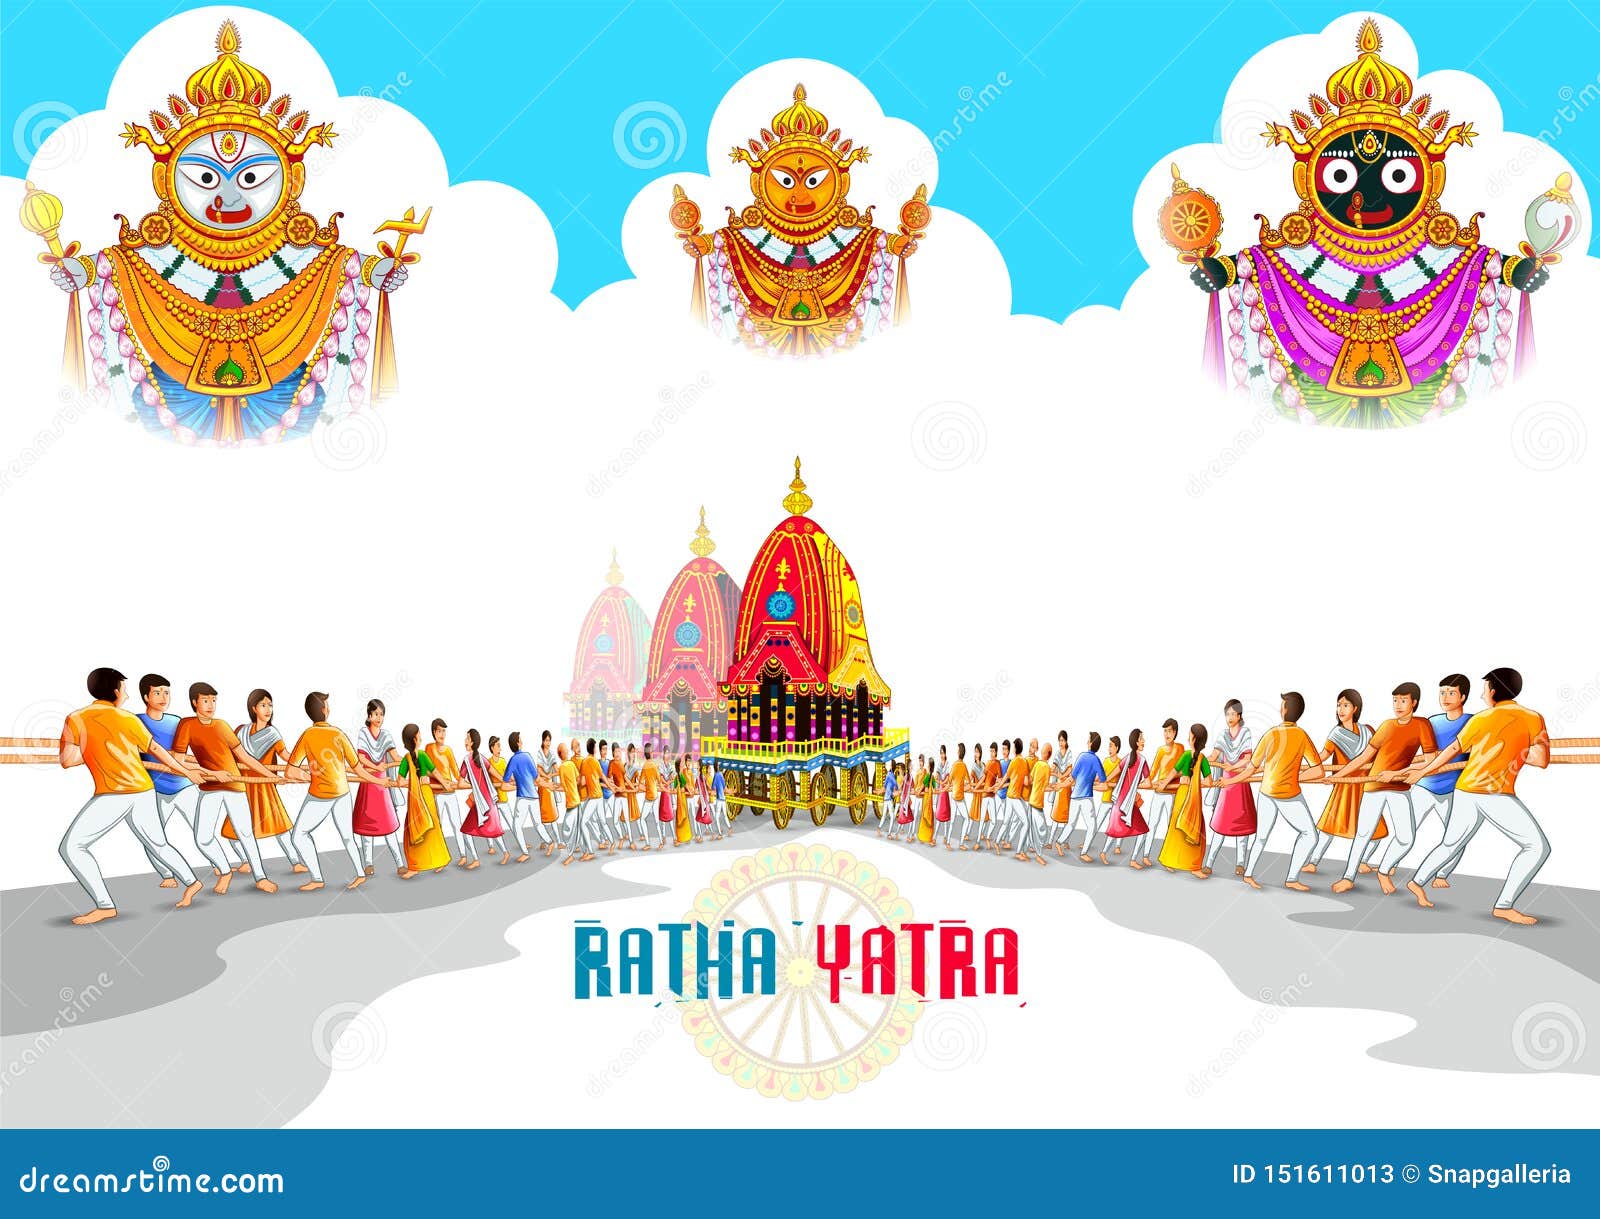 Rath Yatra Images  Free Download on Freepik